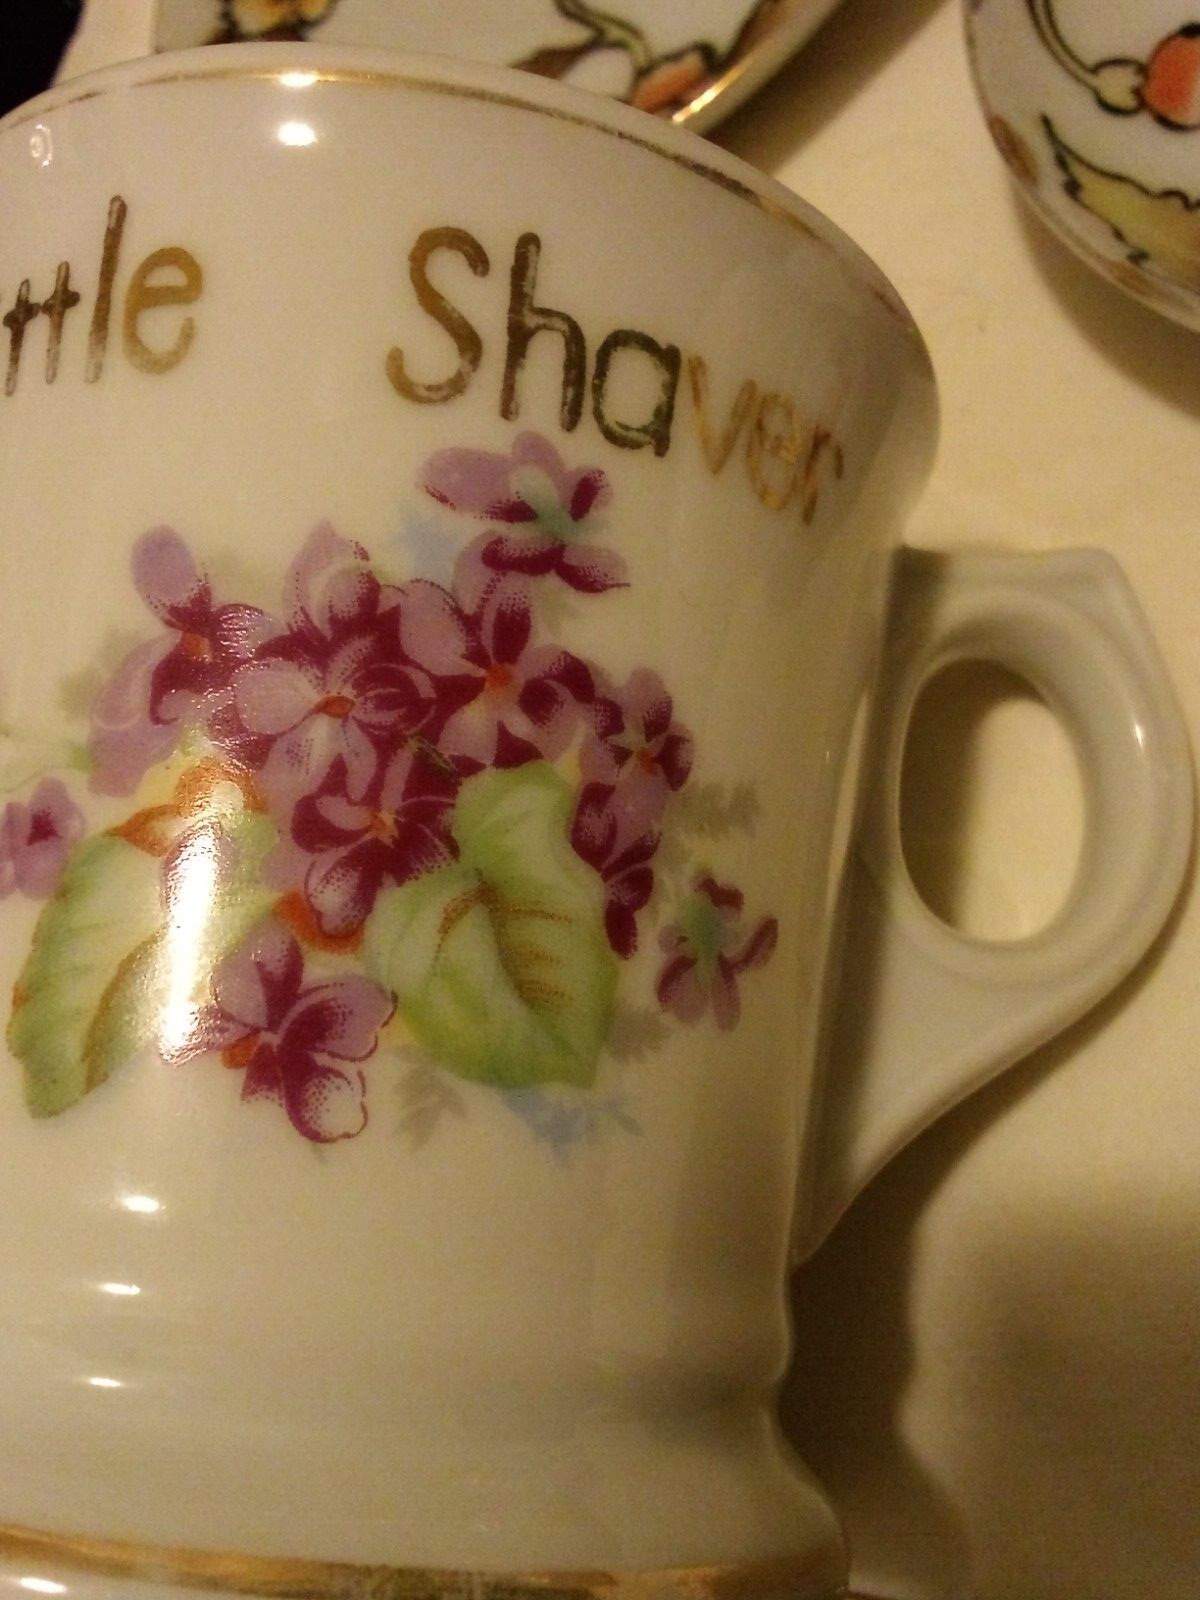 Antique porcelain redmark Japan violets gold teen shaving mug gift vanity bath